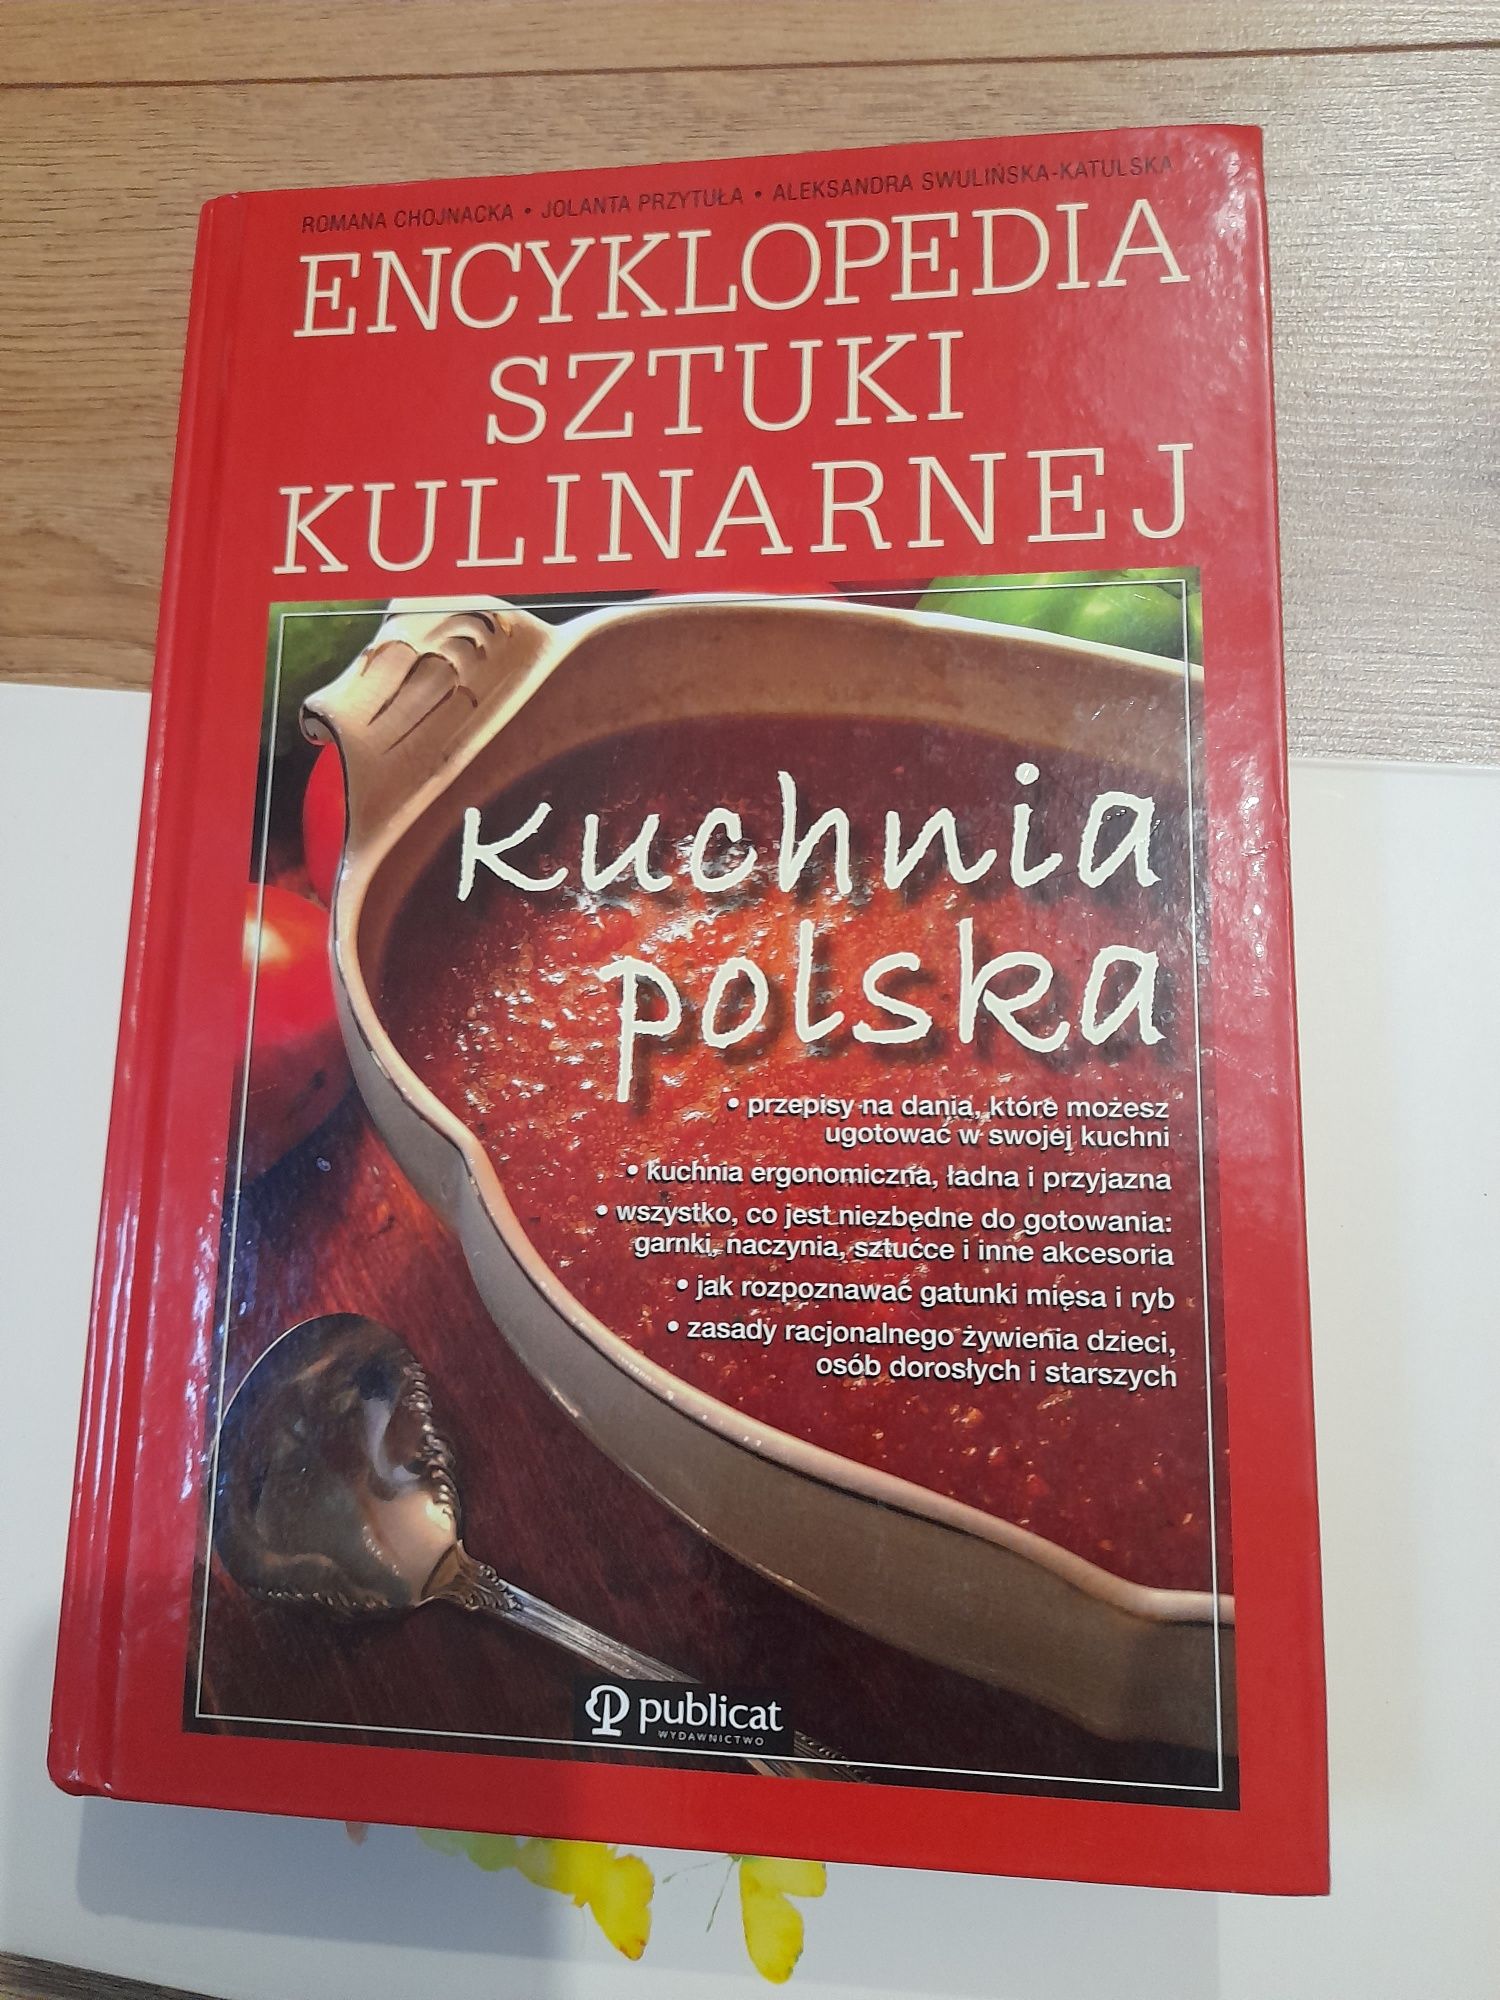 Encyklopedia kuchni kulinarnej. Kuchnia polska. Książka.